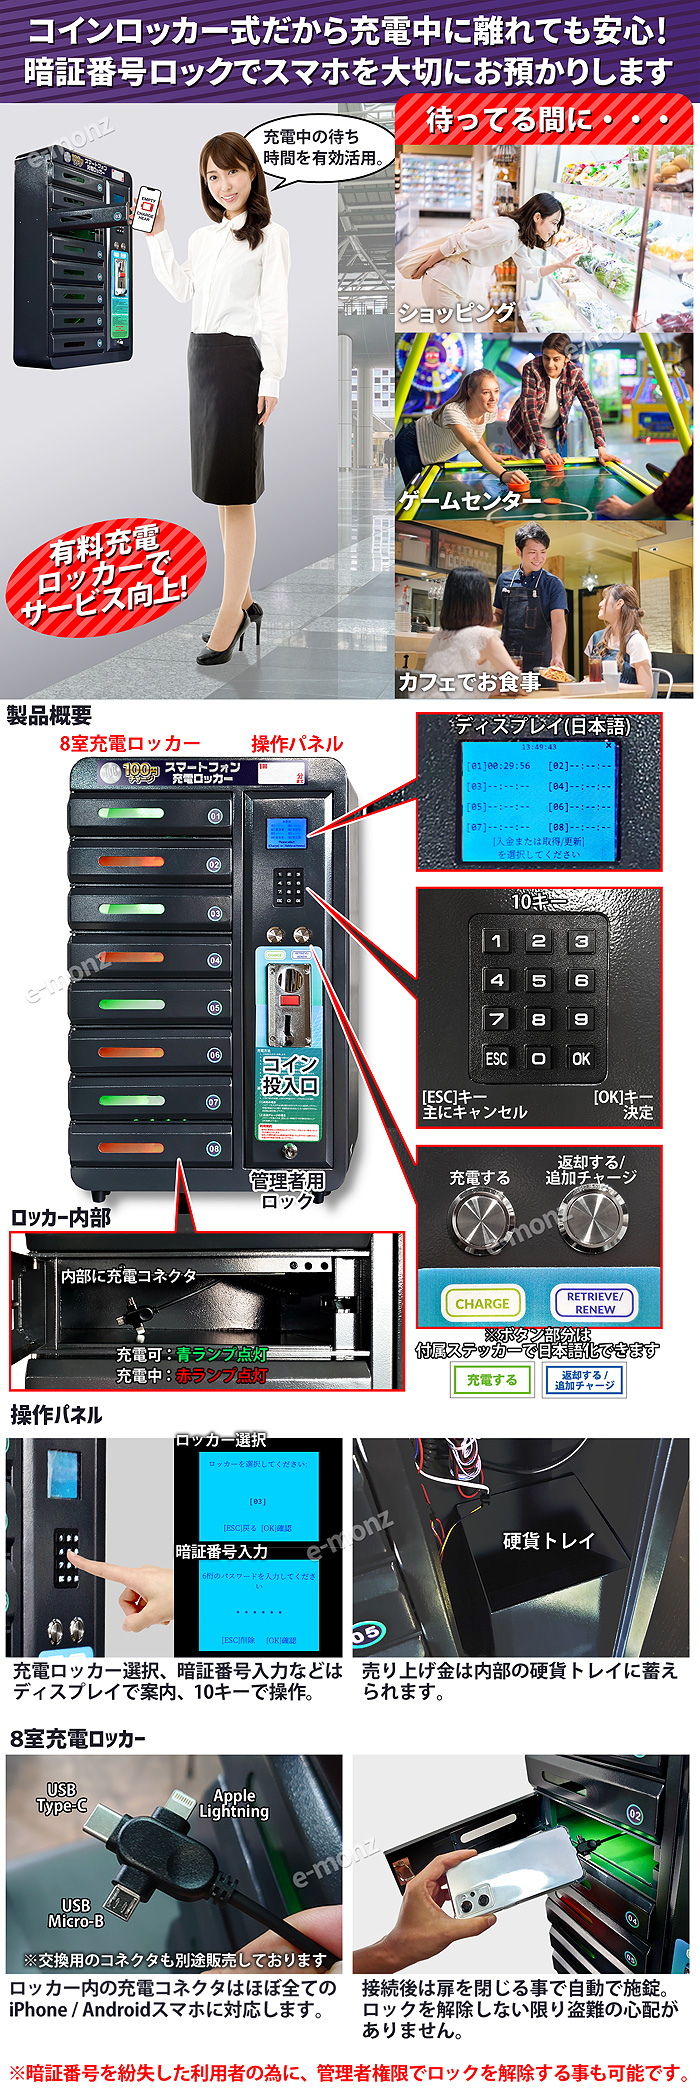 100円充電モバイルロッカー8